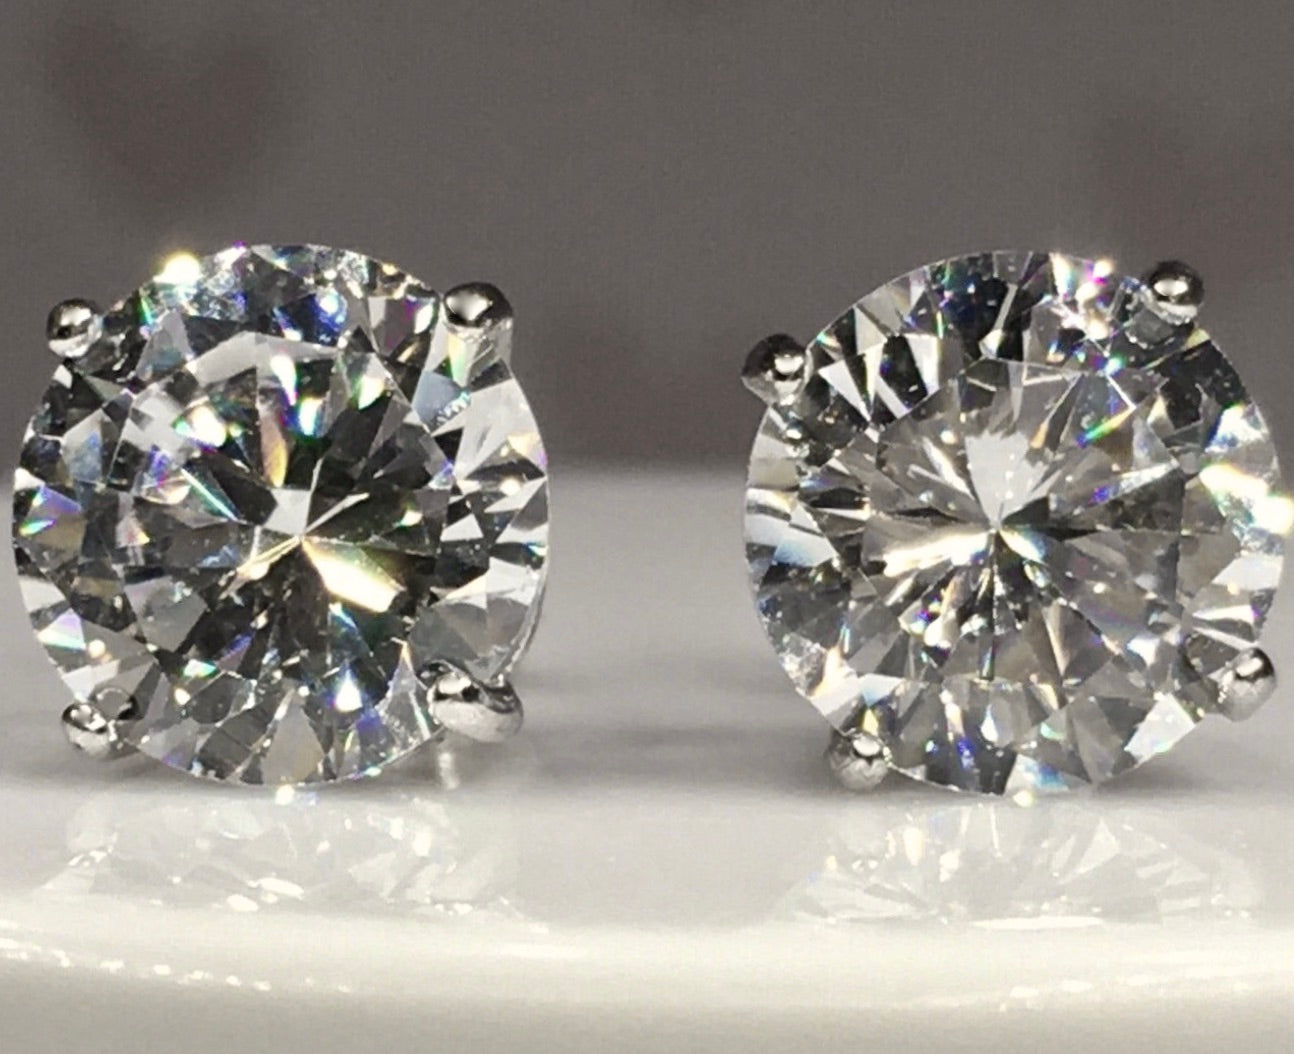 Platinum 3.00 Carat Diamond Stud Earrings – Chalmers Jewelers